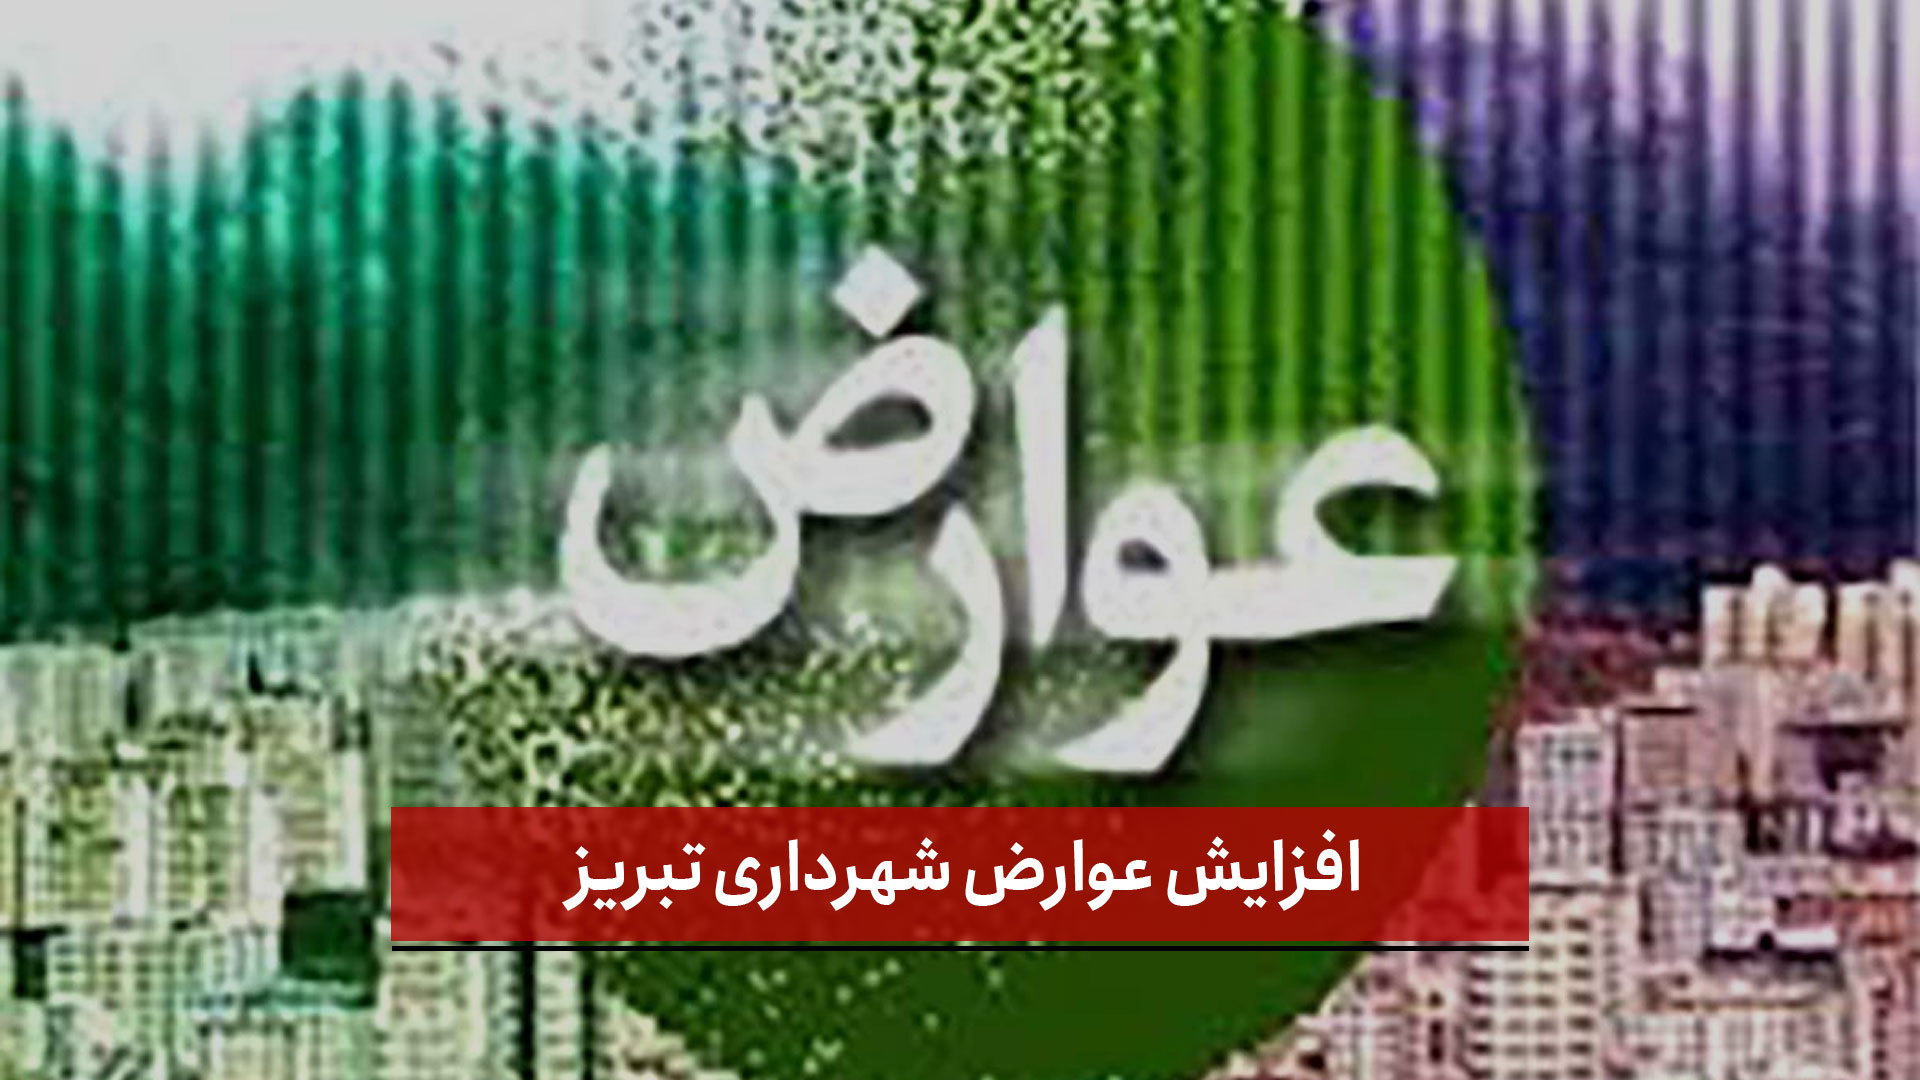 فیلم | افزایش ۲۵۰ درصدی عوارض شهرداری تبریز!